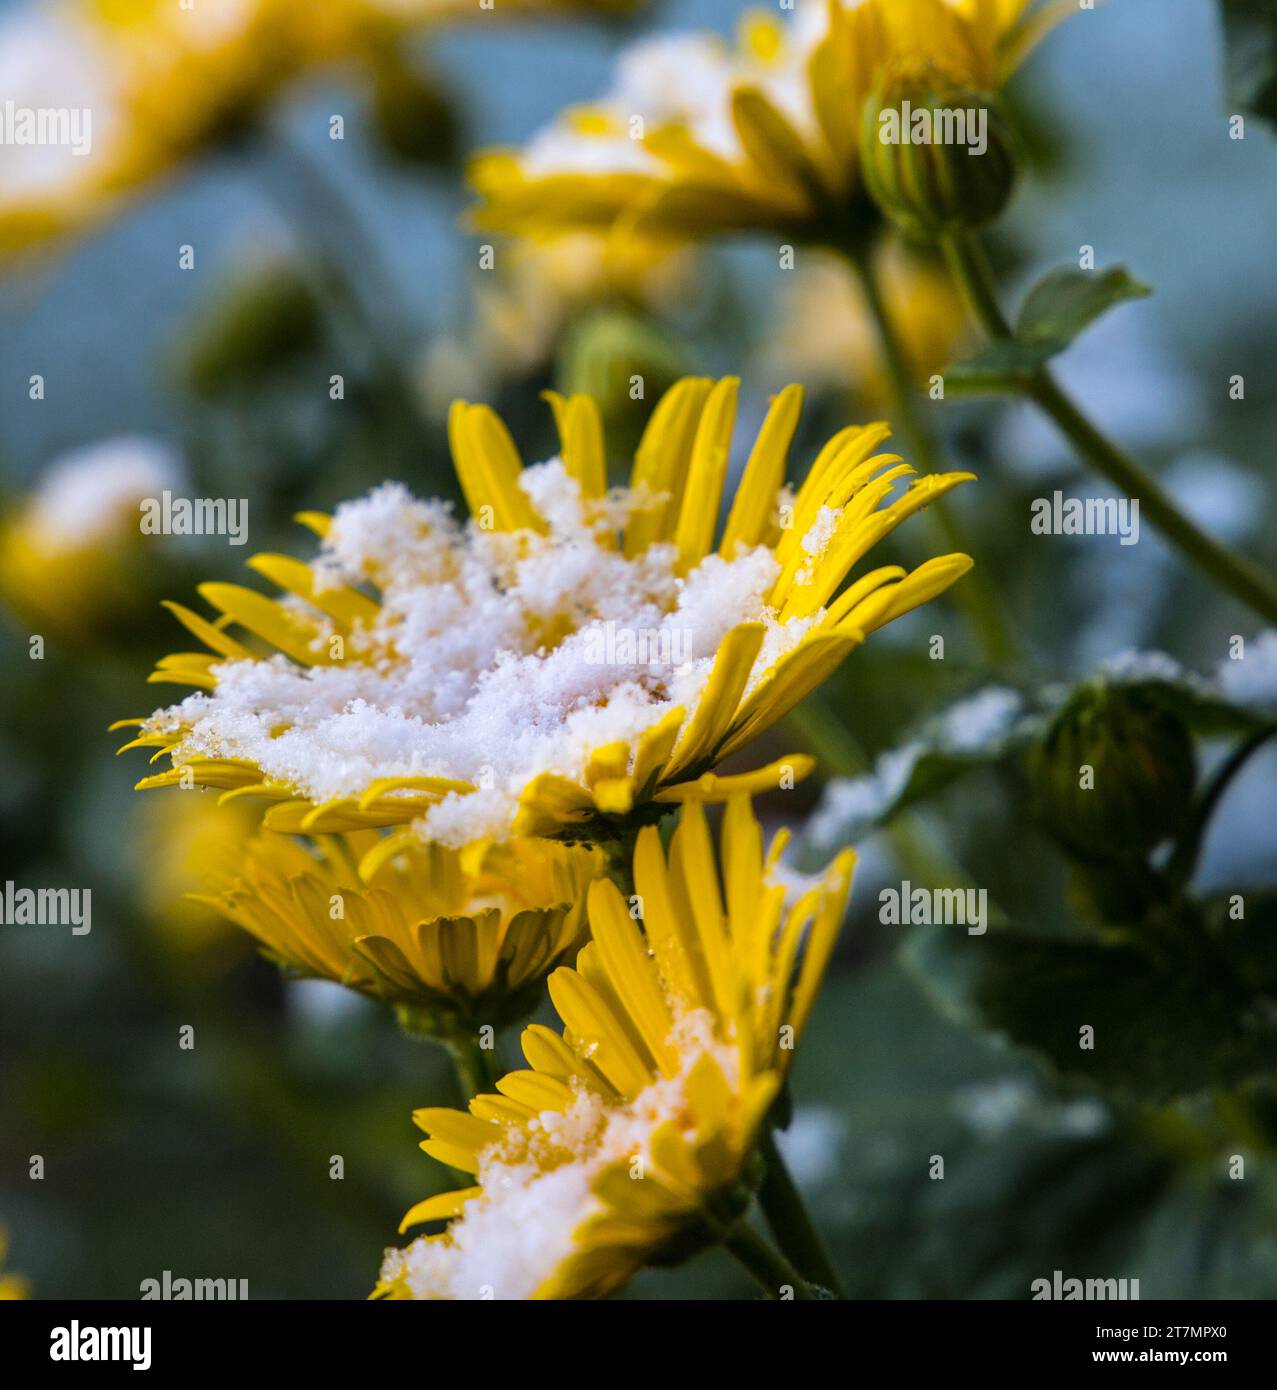 Blume im Schnee, schneebedeckt im Sonnenlicht Banque D'Images